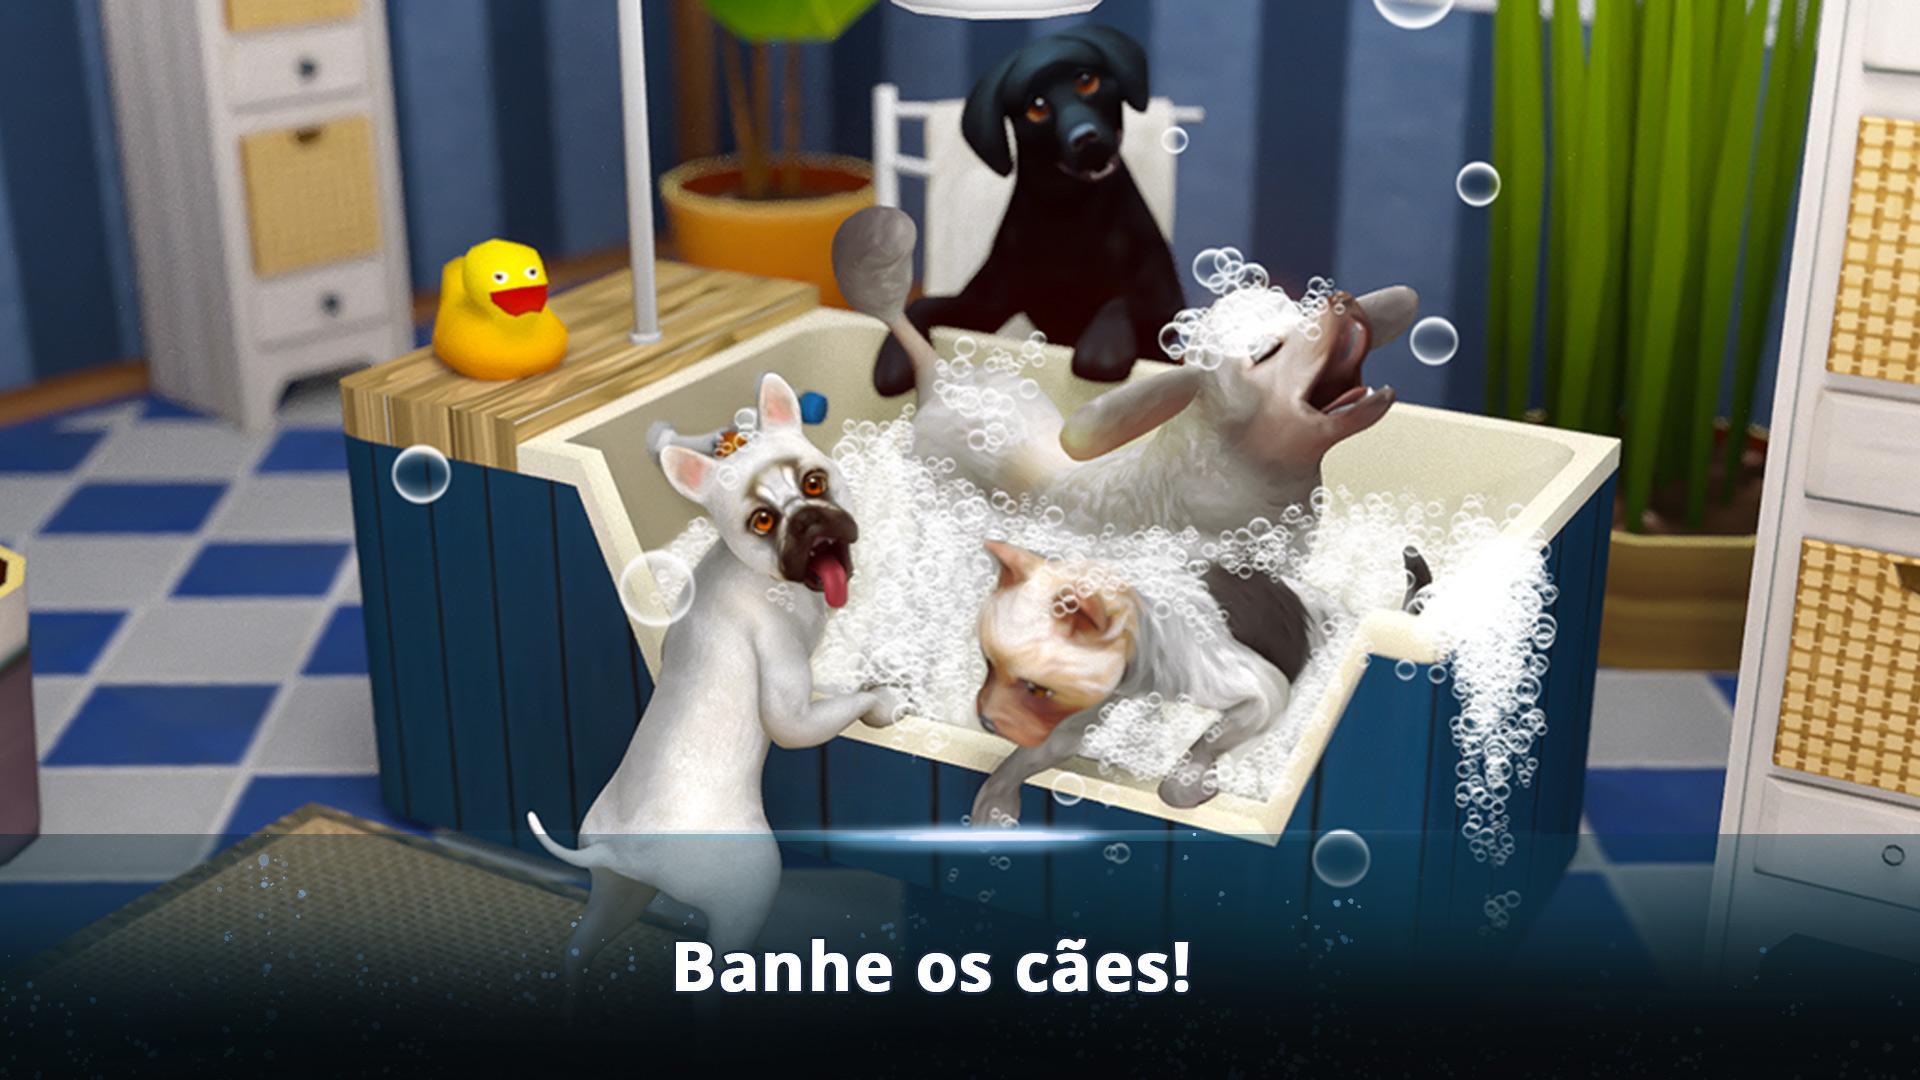 Screenshot 1 of DogHotel - Brinque com cães 